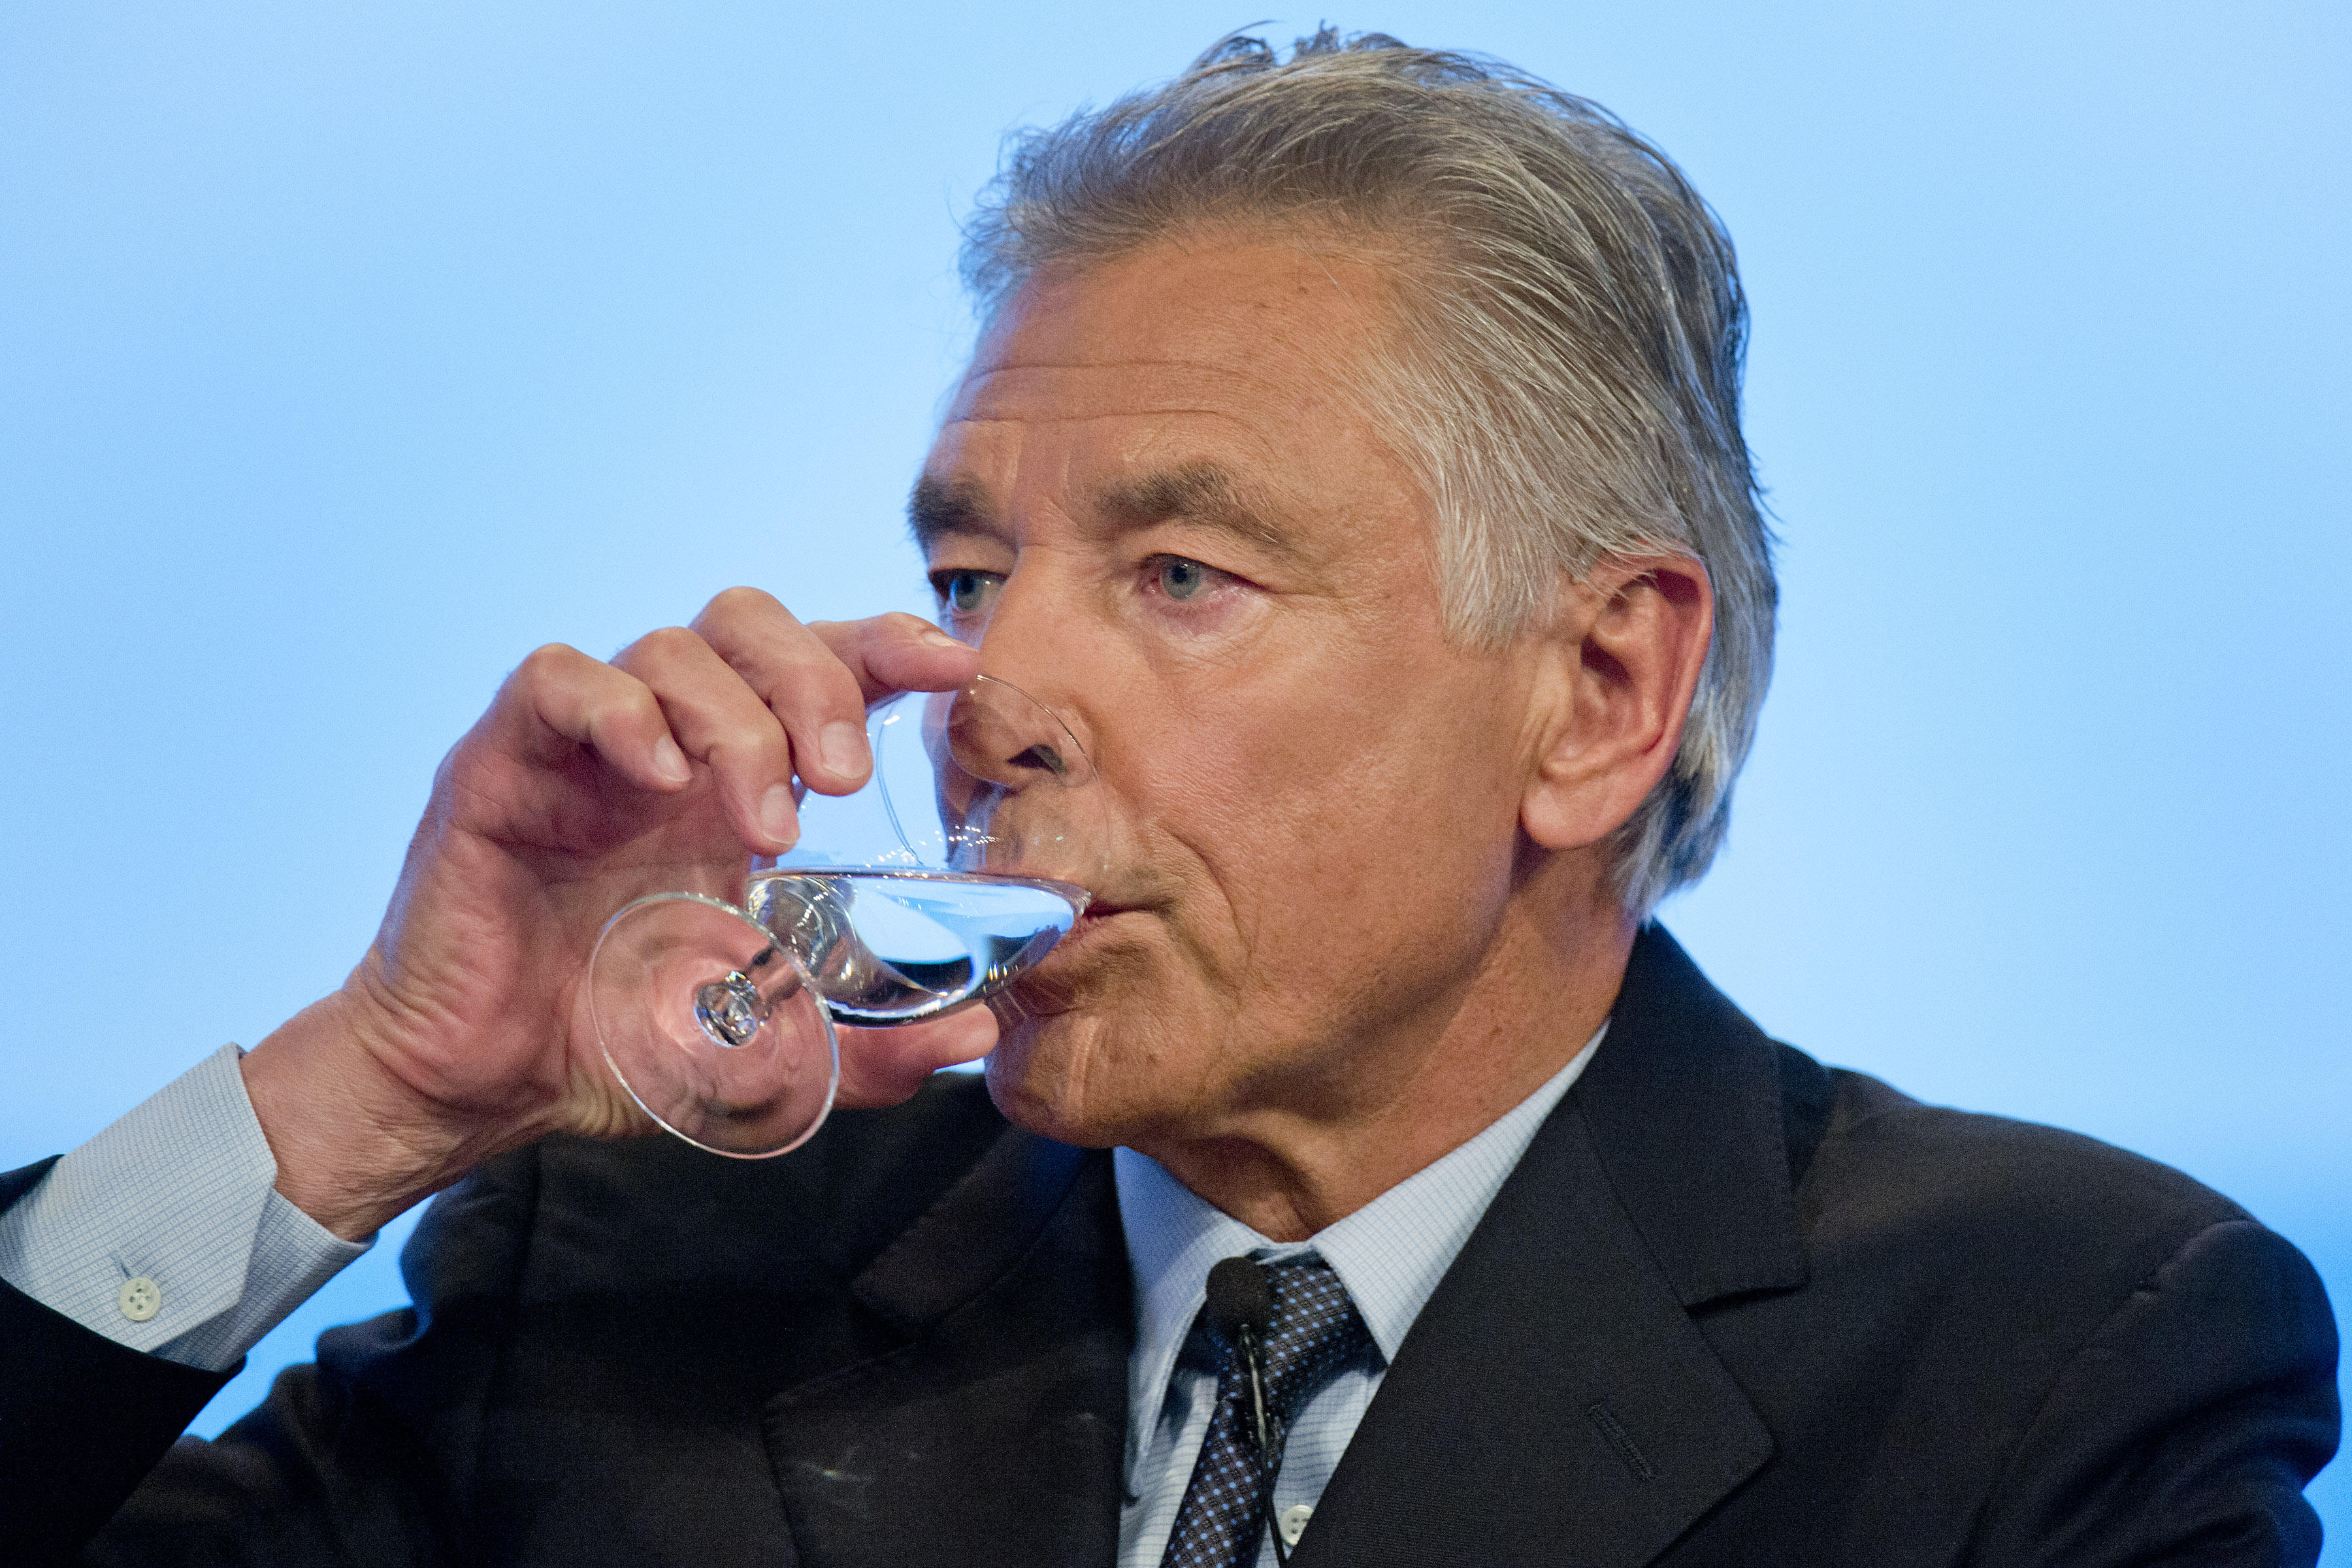 Presidente da Nestlé deseja privatizar a água do planeta! Será verdade? (foto: Reprodução/Facebook)